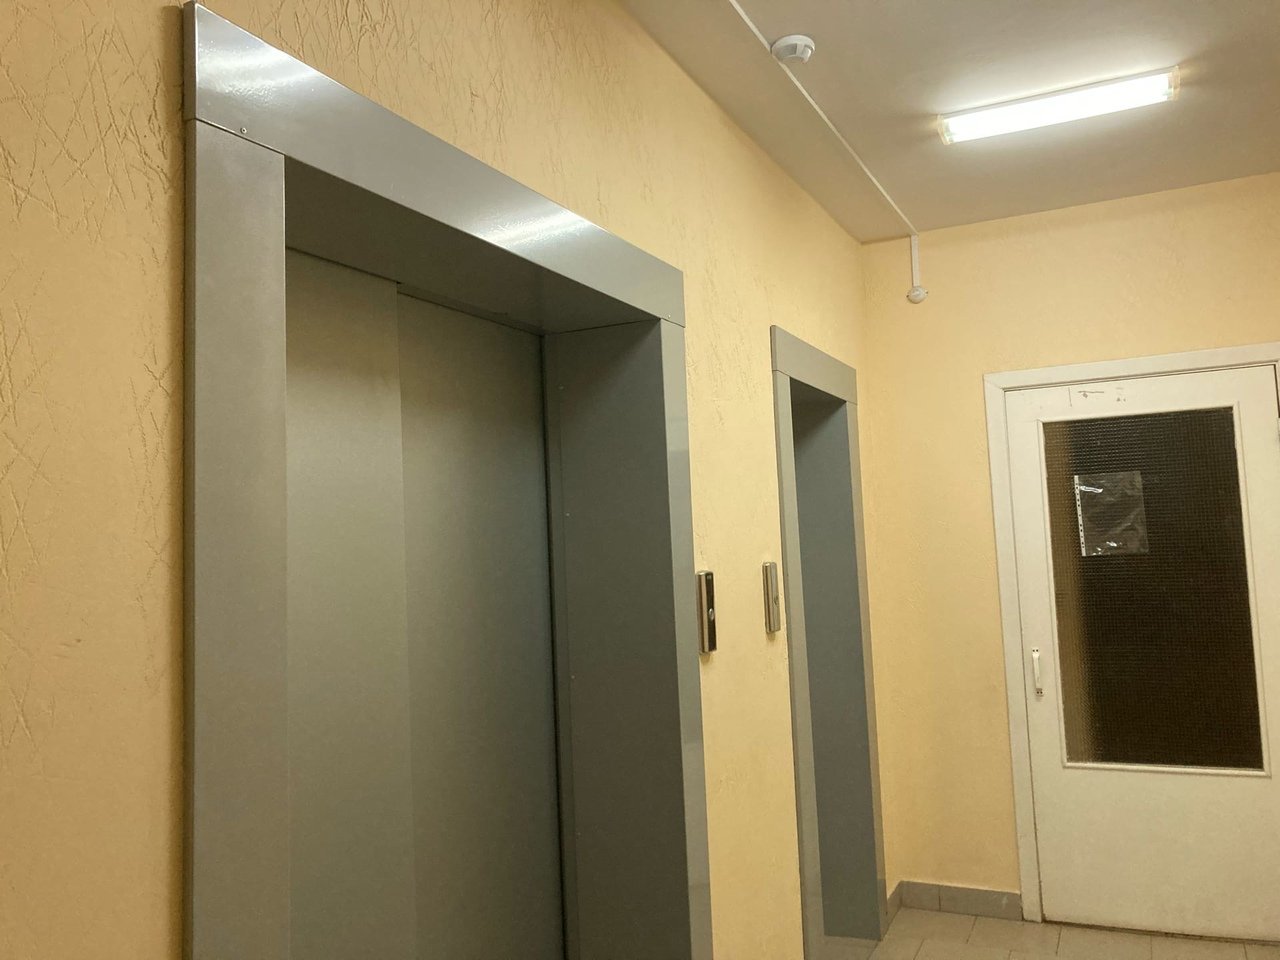 В Ижевске субсидируют замену 40 лифтов в многоквартирных домах